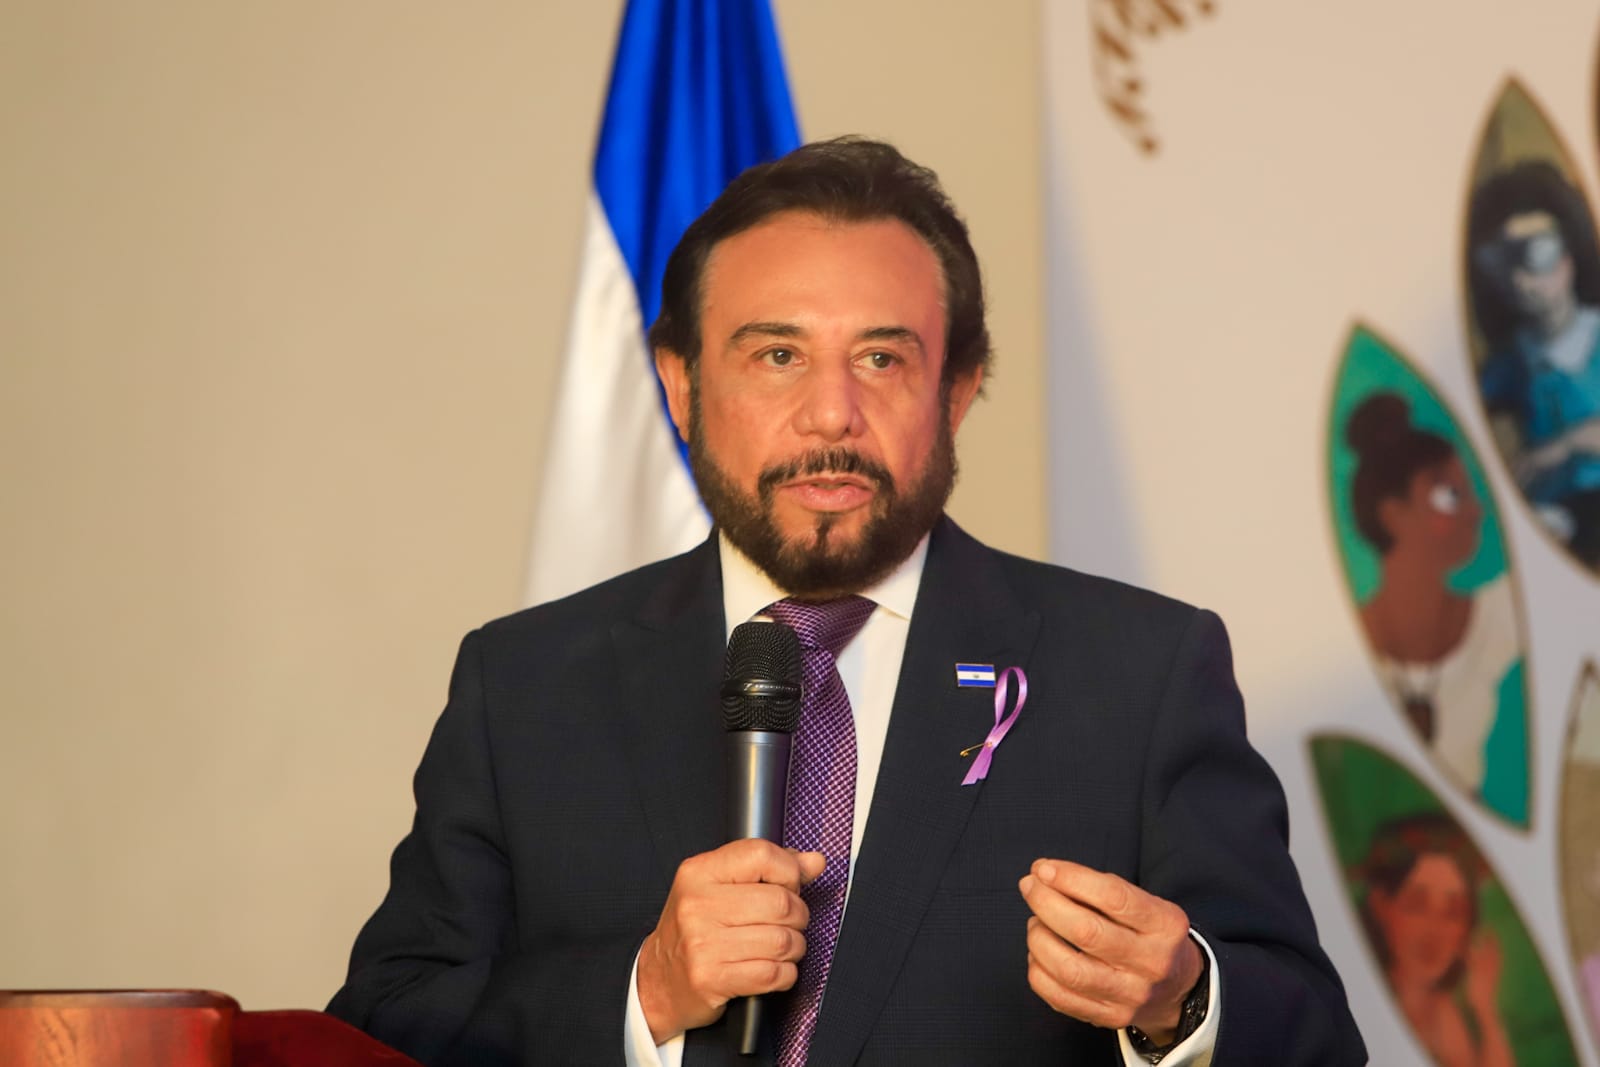 Home - Presidencia de la República de El Salvador